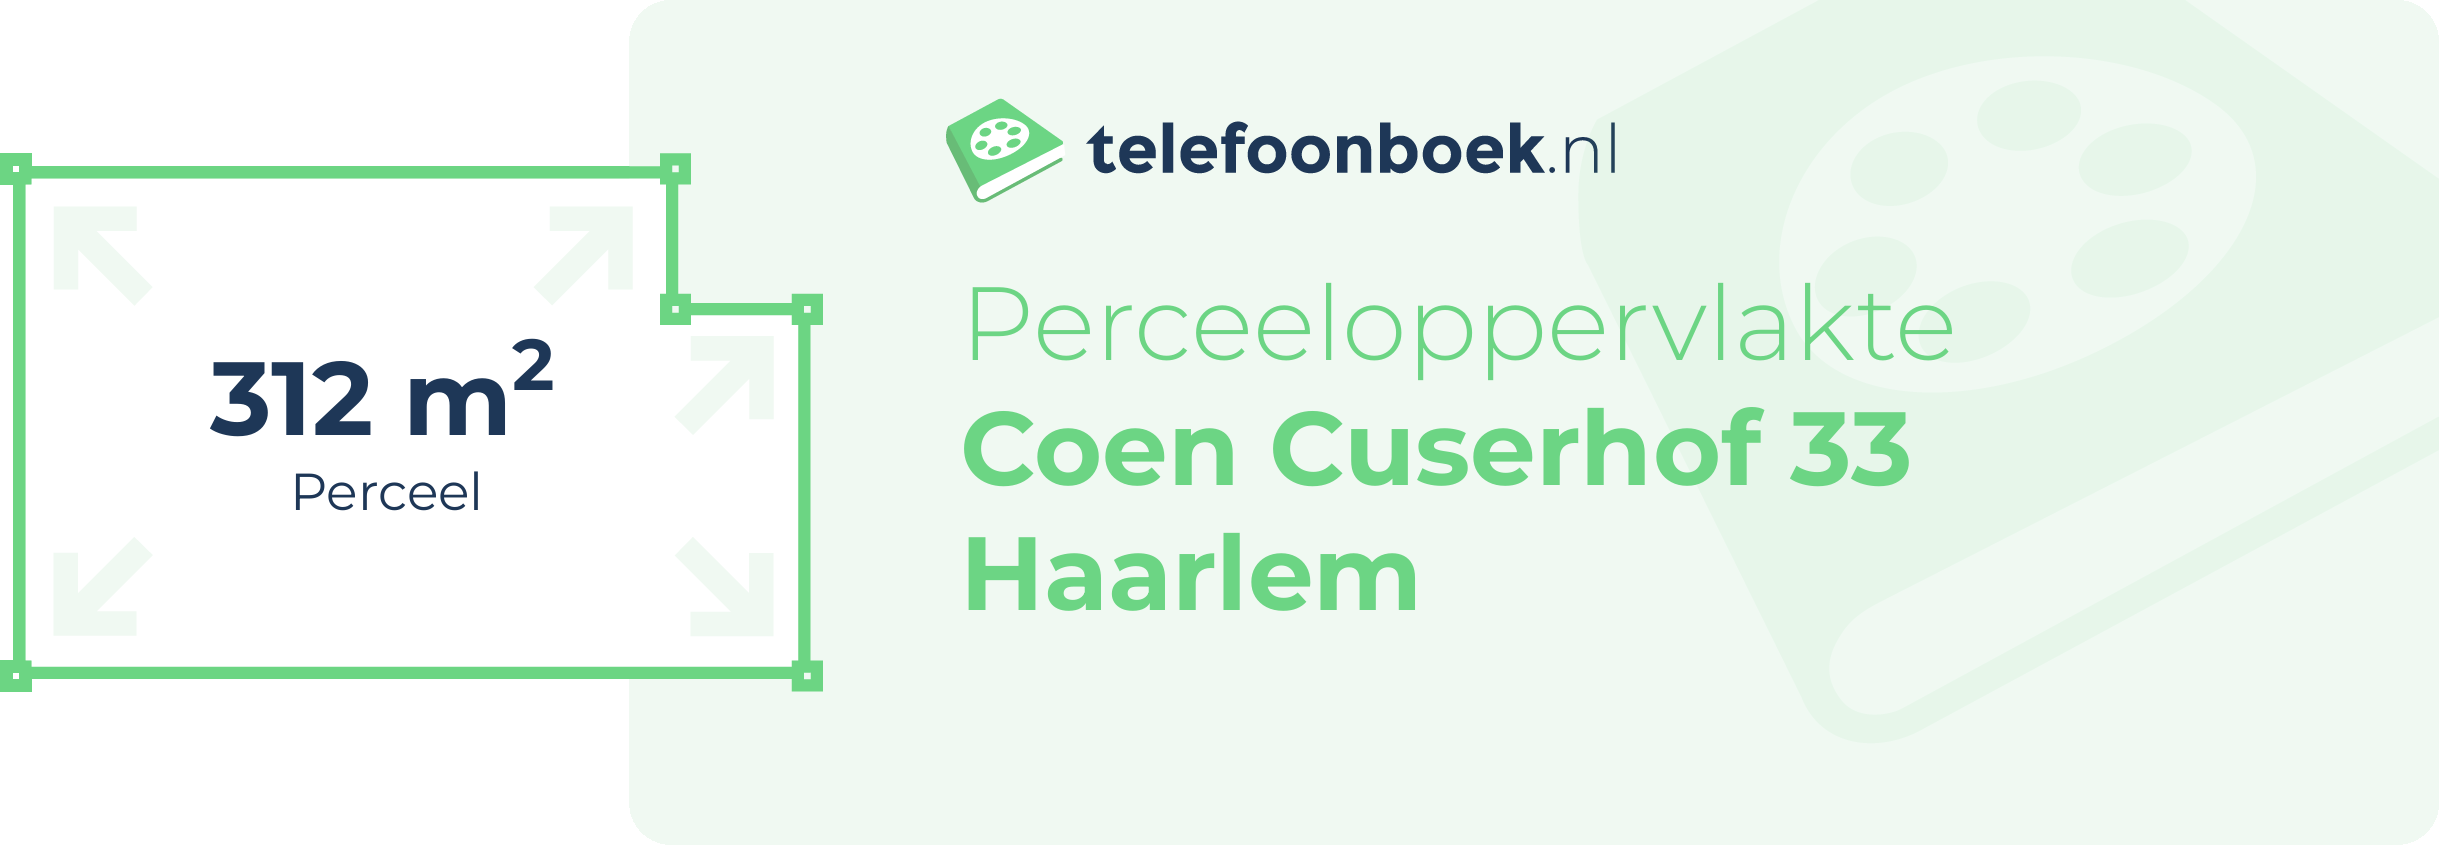 Perceeloppervlakte Coen Cuserhof 33 Haarlem